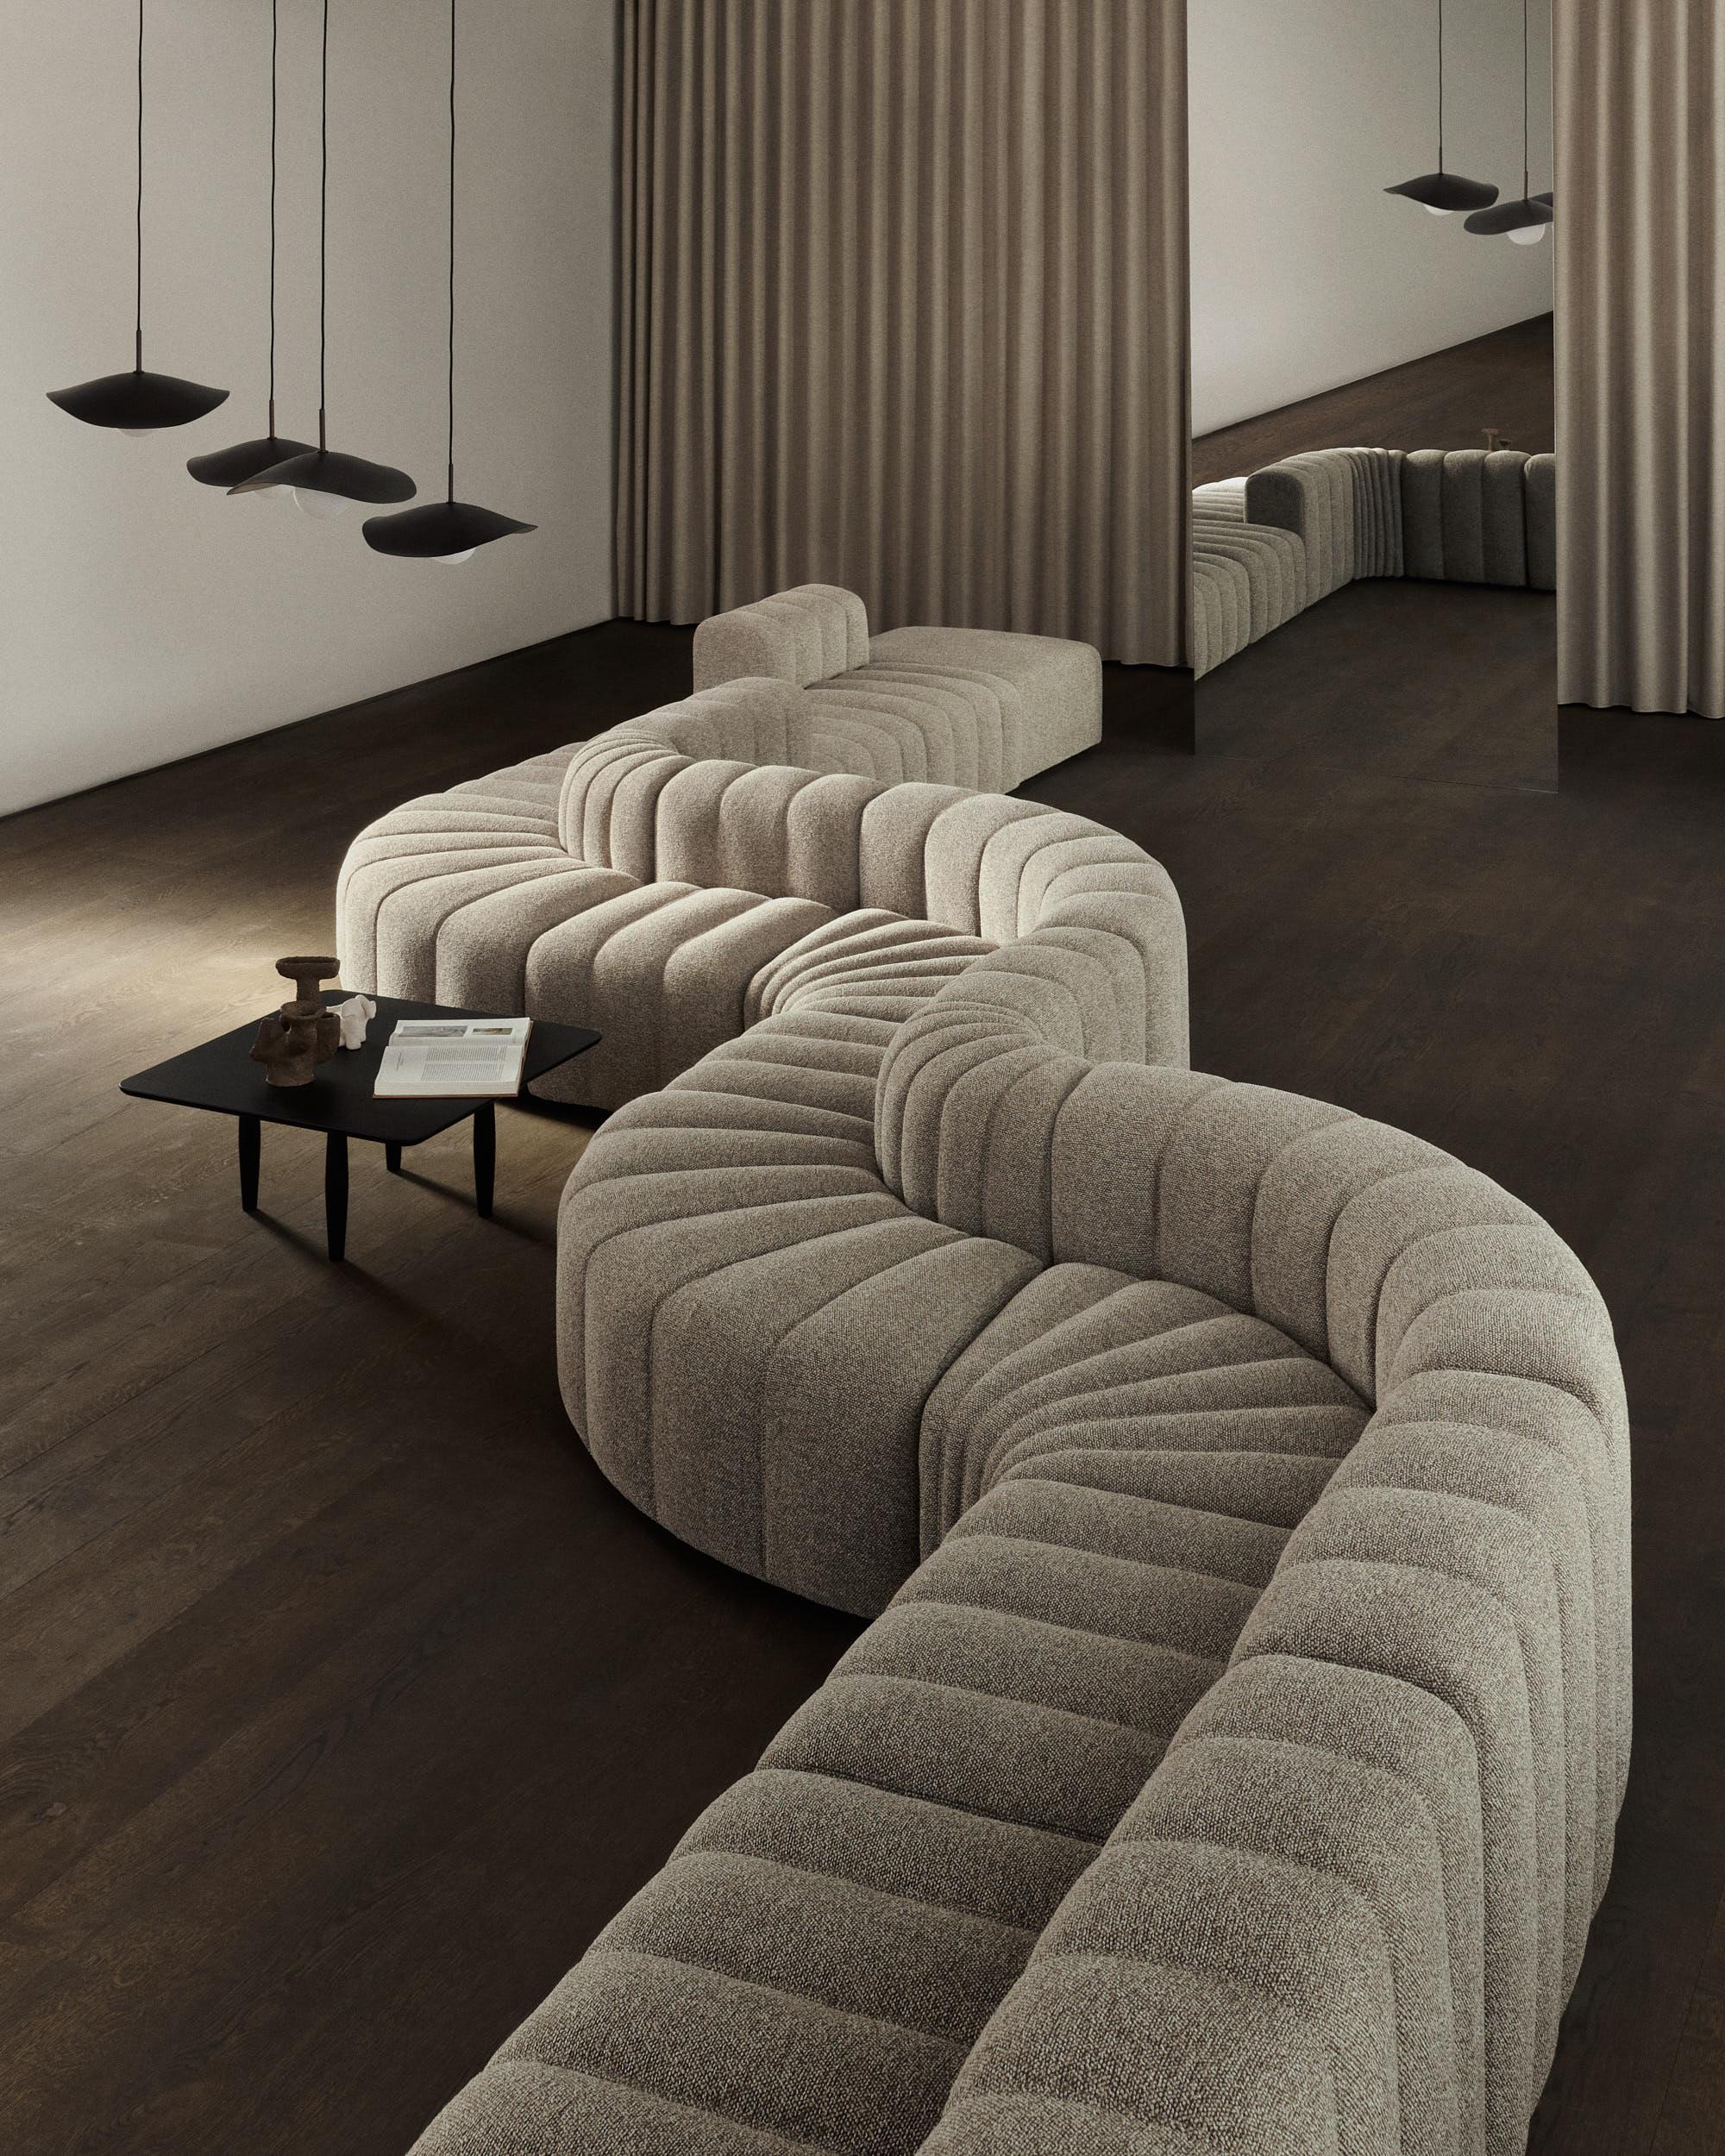 Studio sofa by Kristian Sofus Hansen & Tommy Hyldahl for Nor11.

Measures: Setup 8 modules : 1 large, 1 medium, 1 small, 2 curve, 1 corner, 1 ottoman, 2 armrest) 
W. 406 cm / D. 400 cm / H. 70cm / Seating H. 42cm.

Model shown: Barnum bouclé